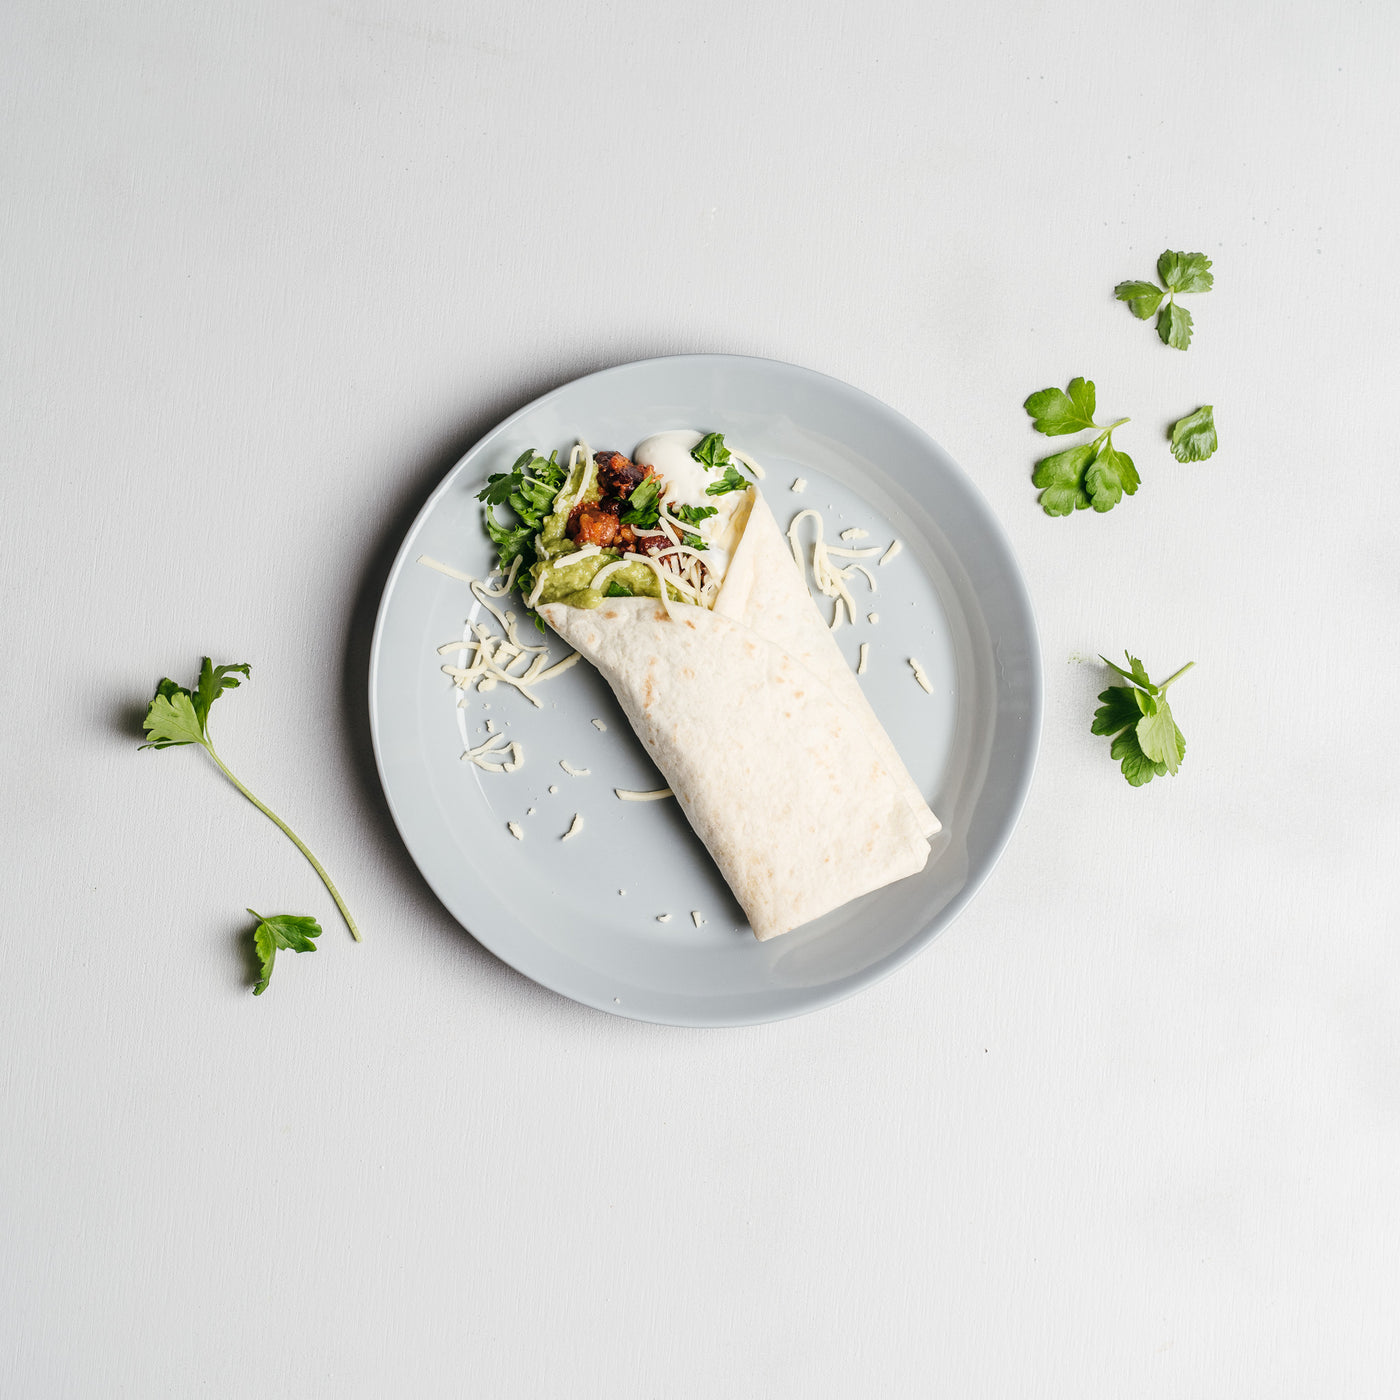 Lisää tortillaletun väliin kasvistäytteen lisäksi esimerkiksi guacamolea, ranskankermaa, salaaattia ja tuoretta korianteria sekä juustoraastetta.